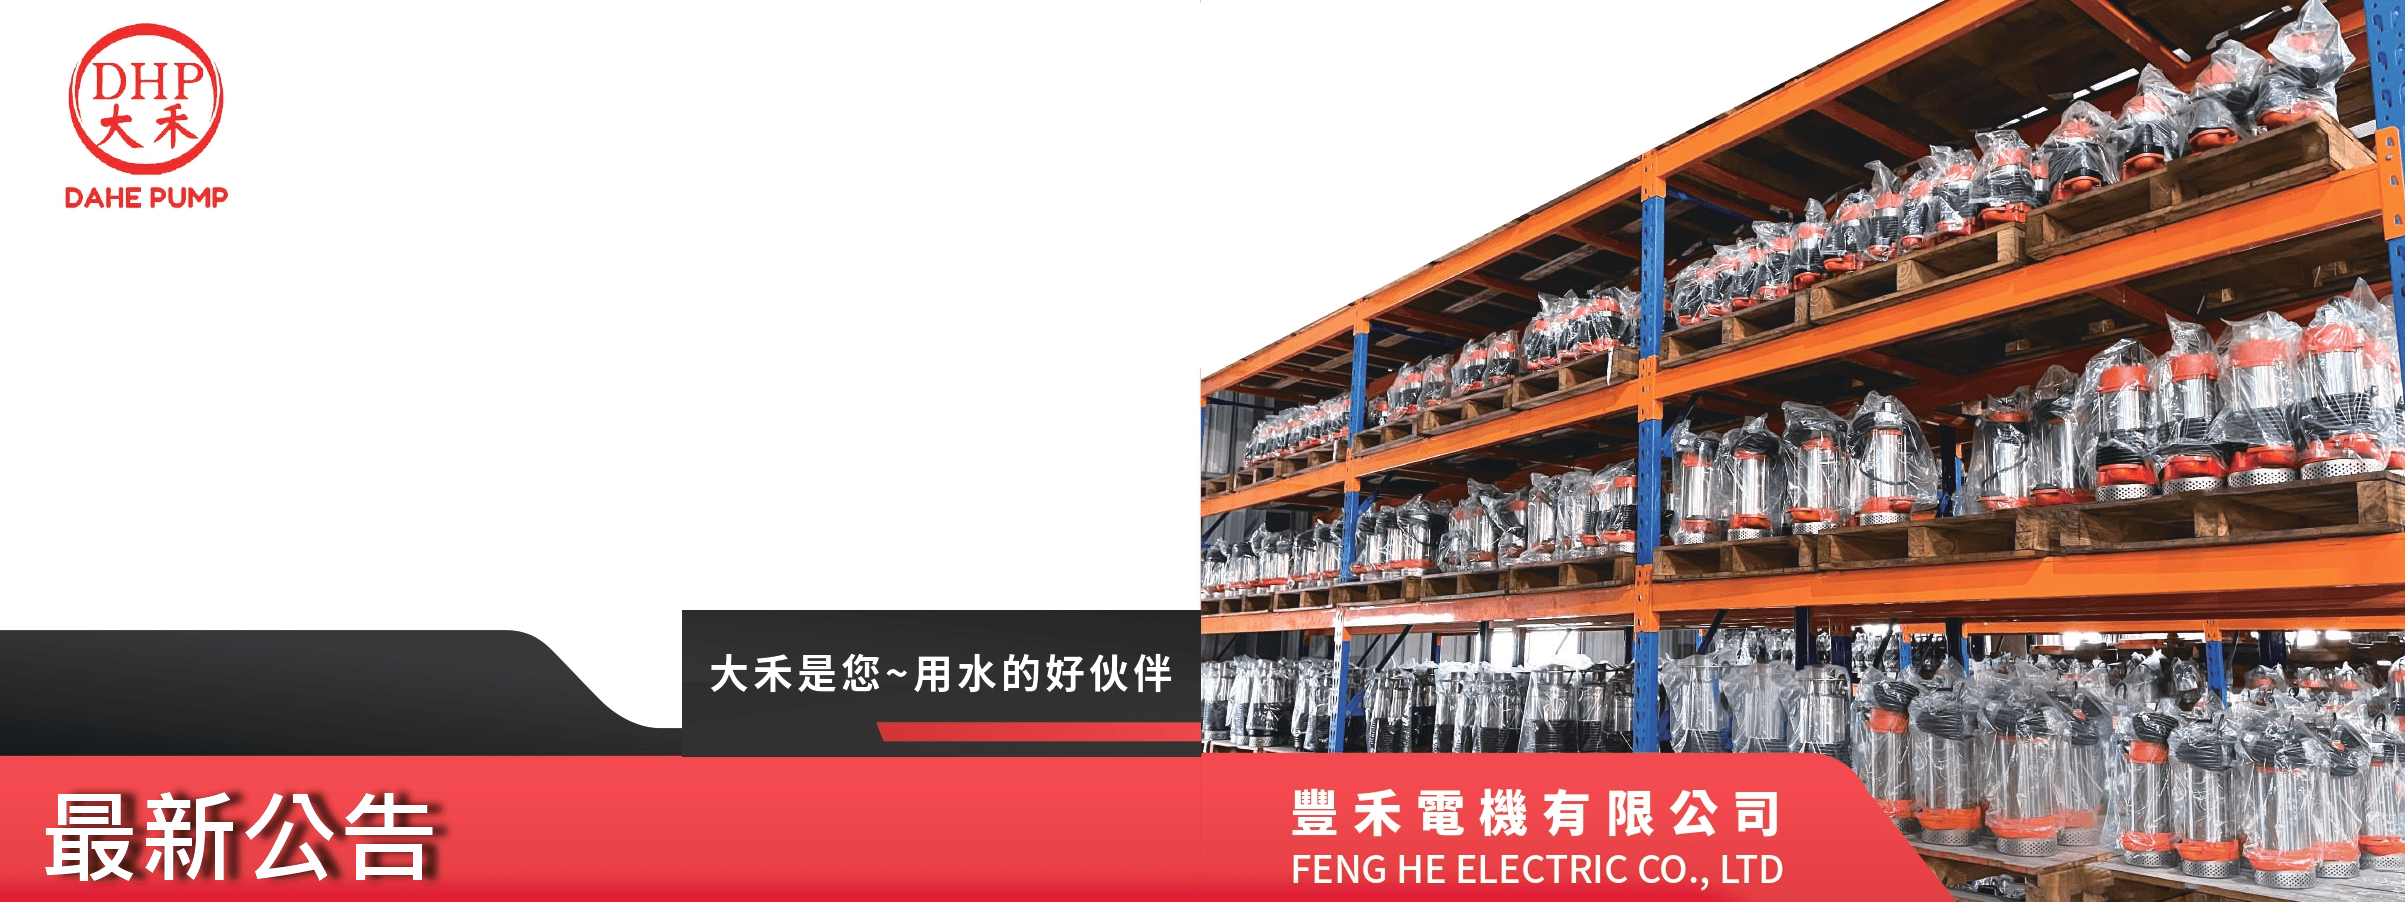 豐禾電機有限公司的最新公告 Banner圖片